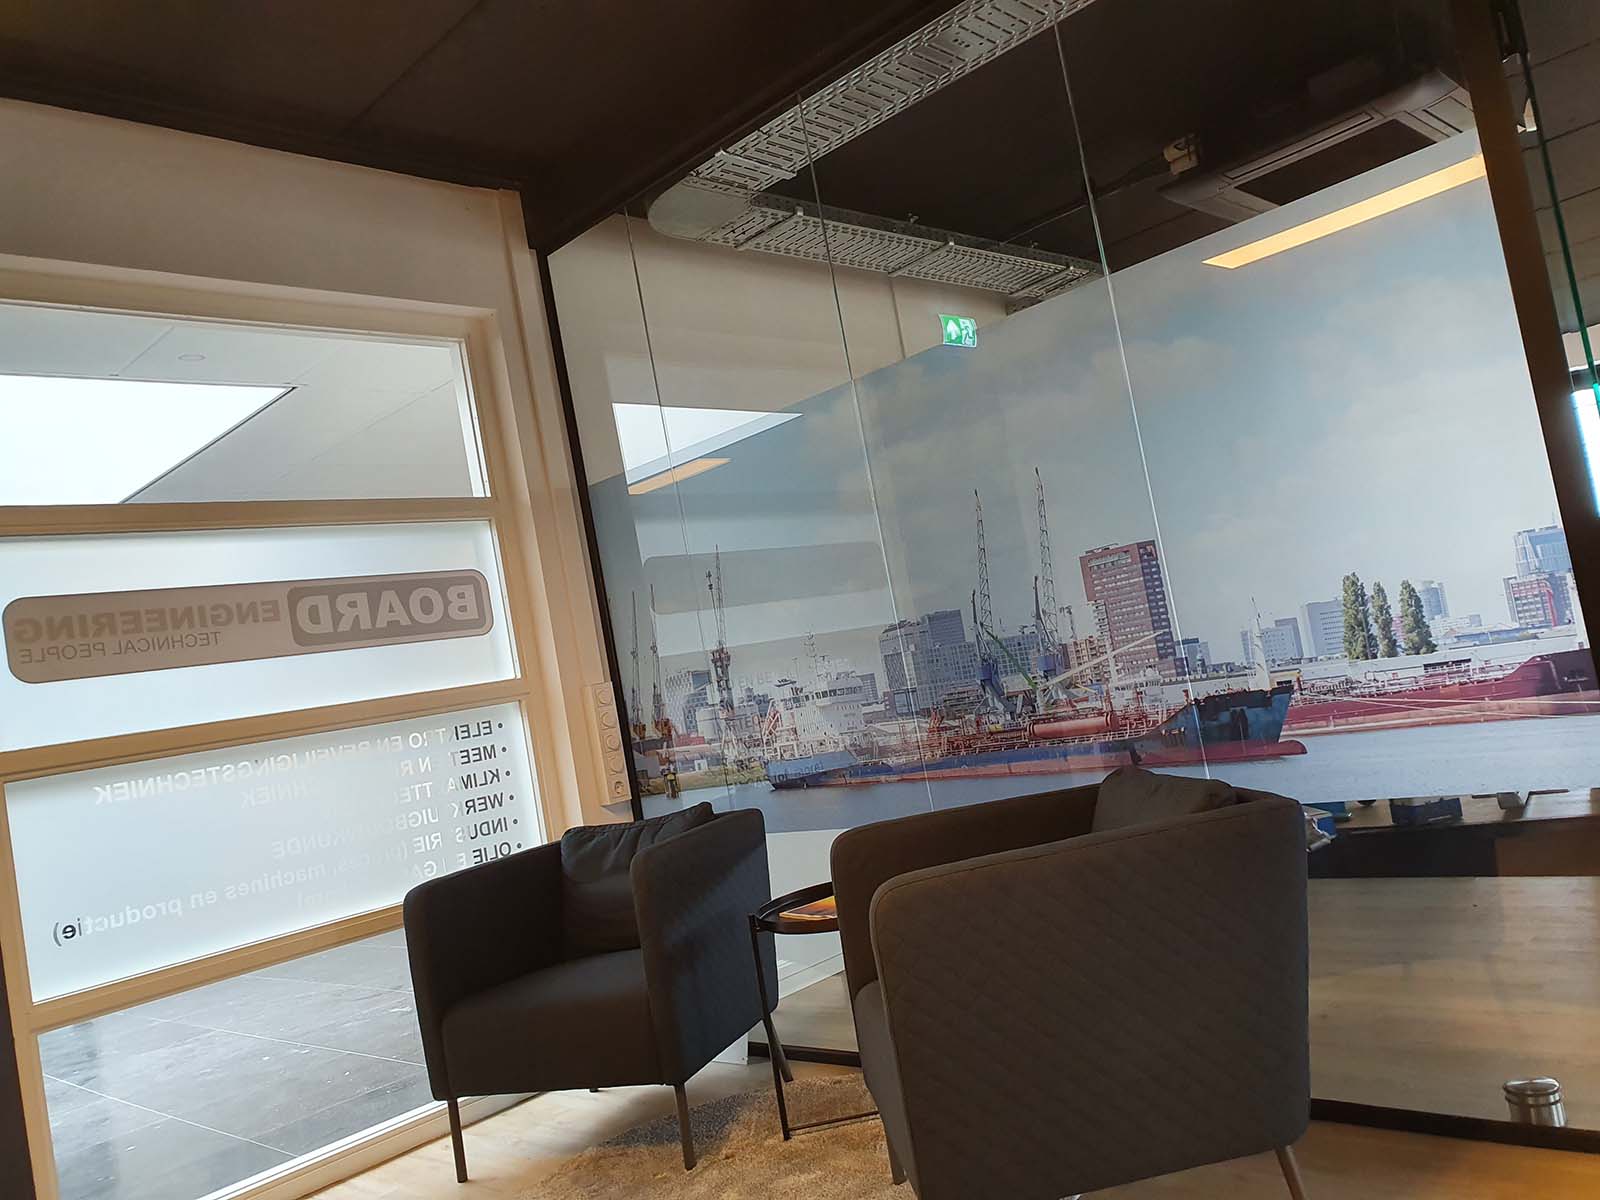 Glaspanelen bij entree van kantoor voorzien van belettering en sfeerfoto